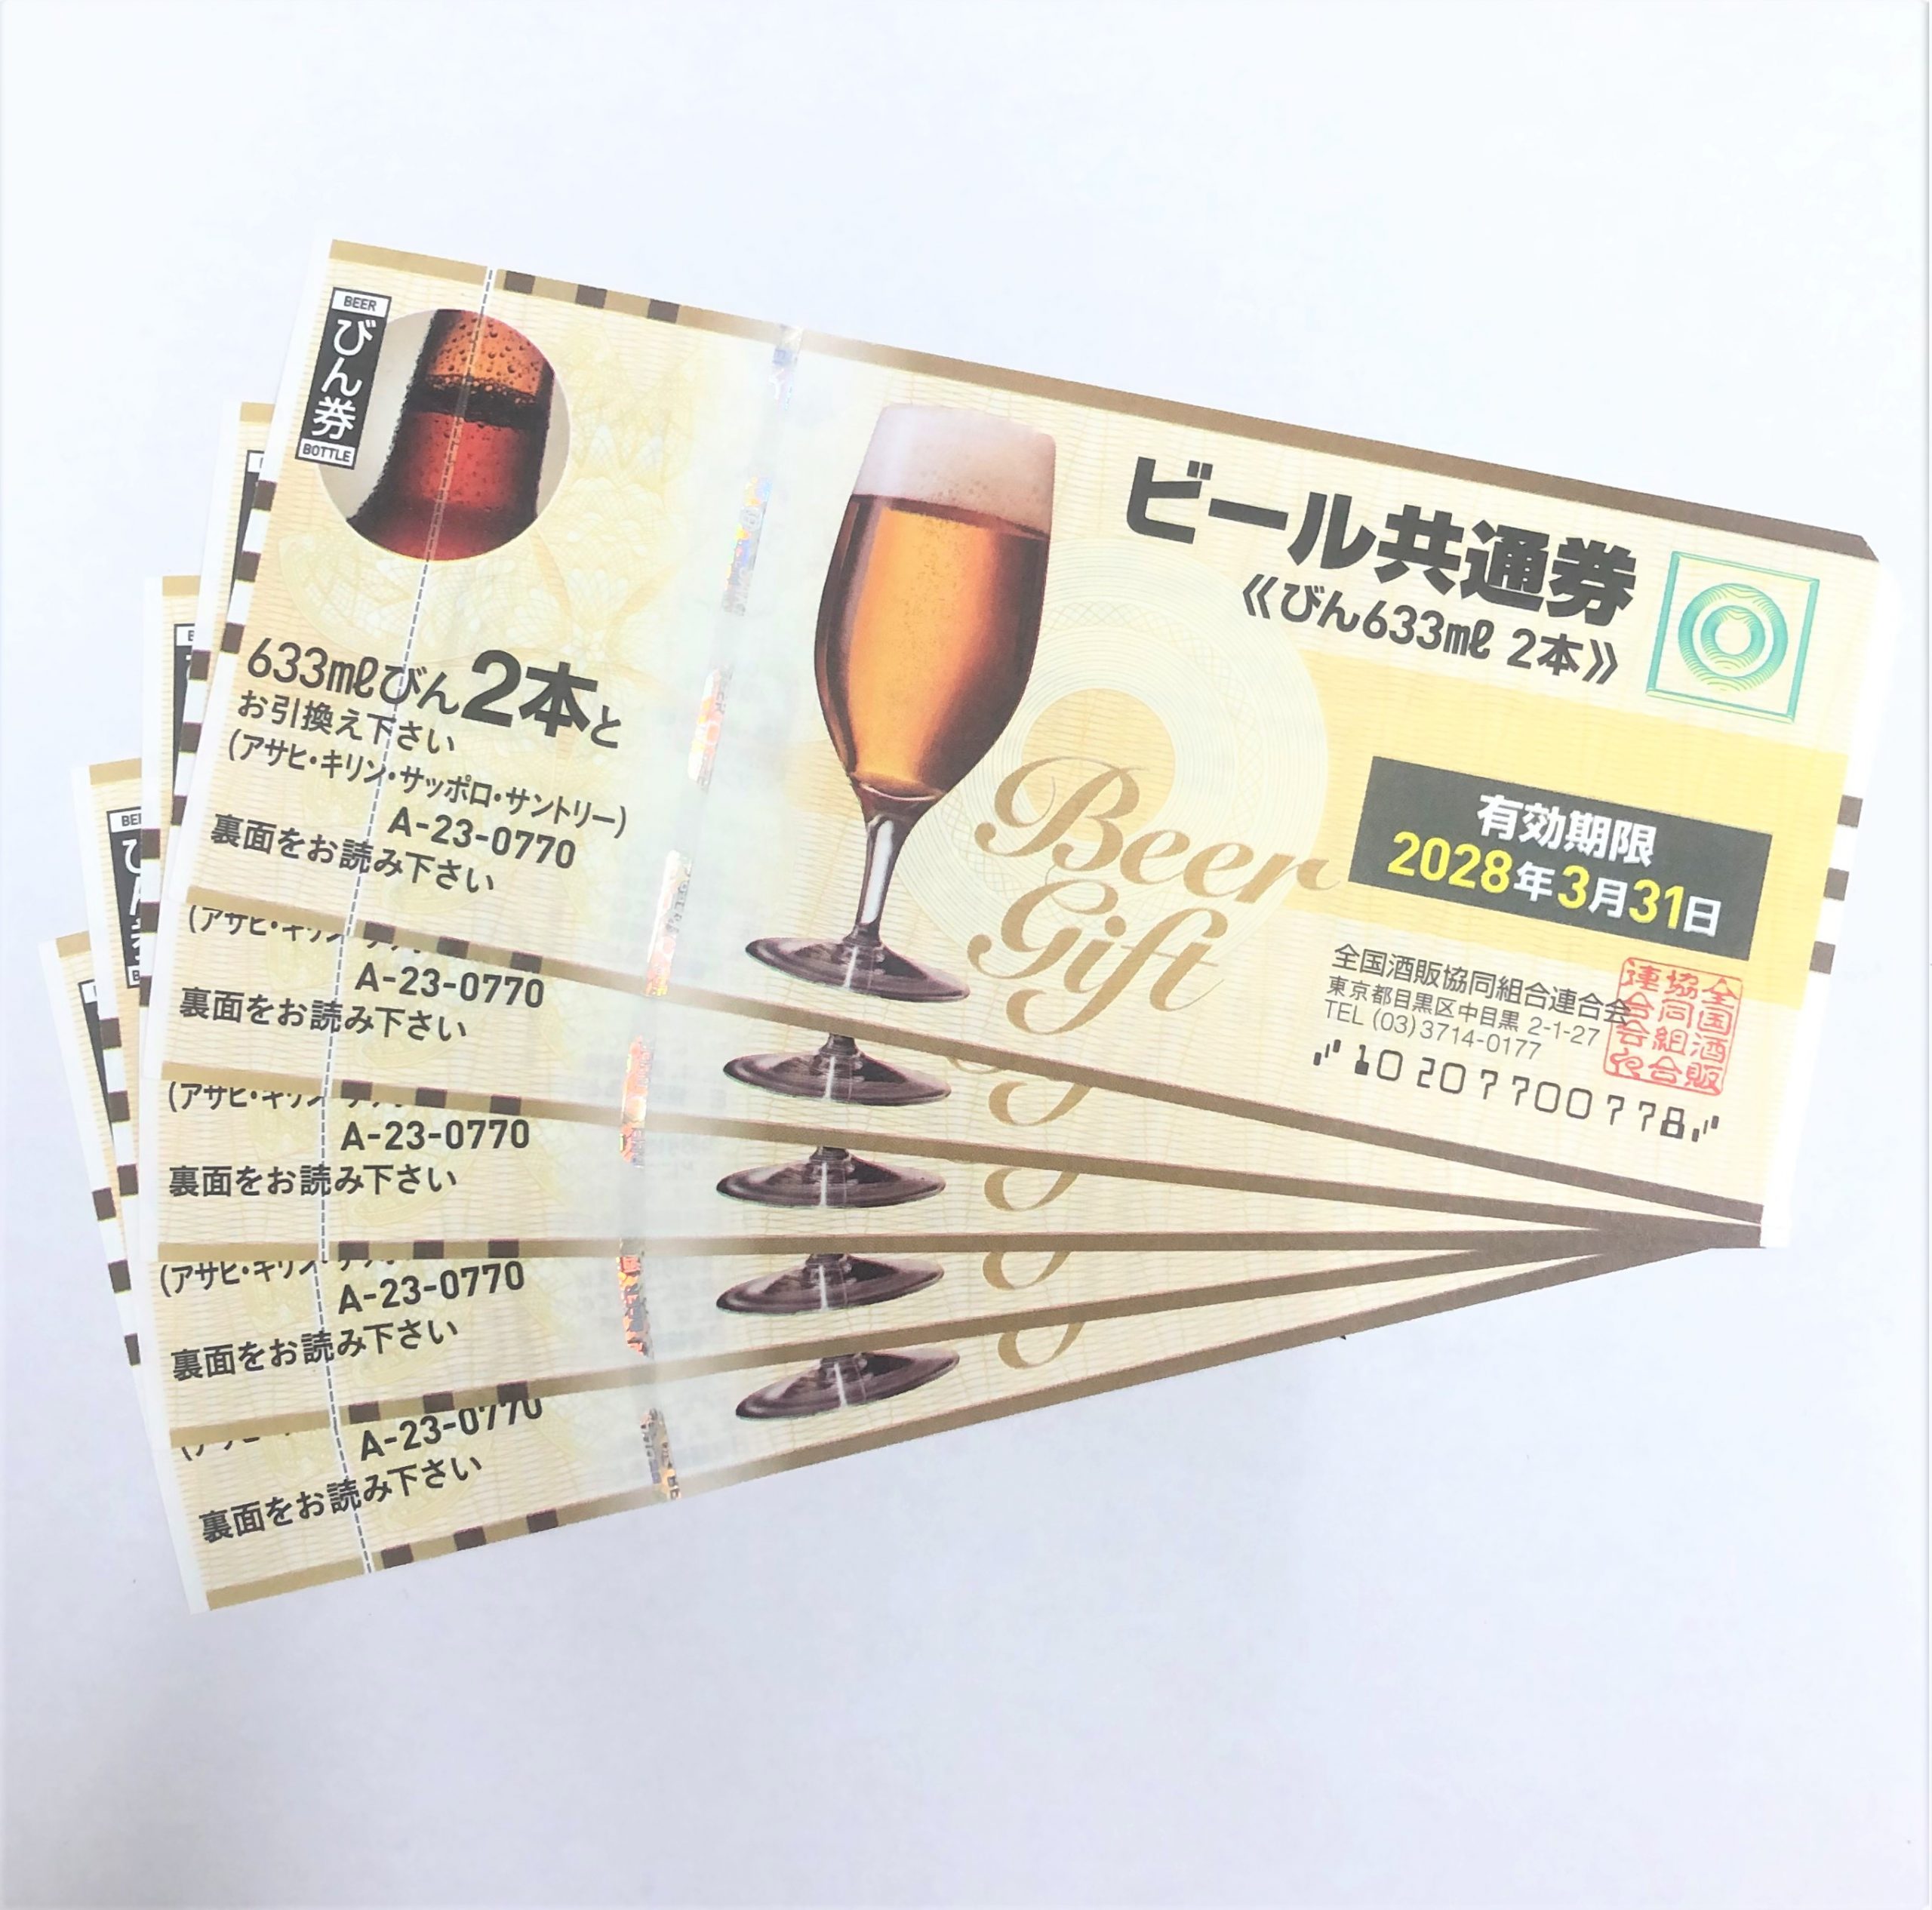 ビール共通券 770円